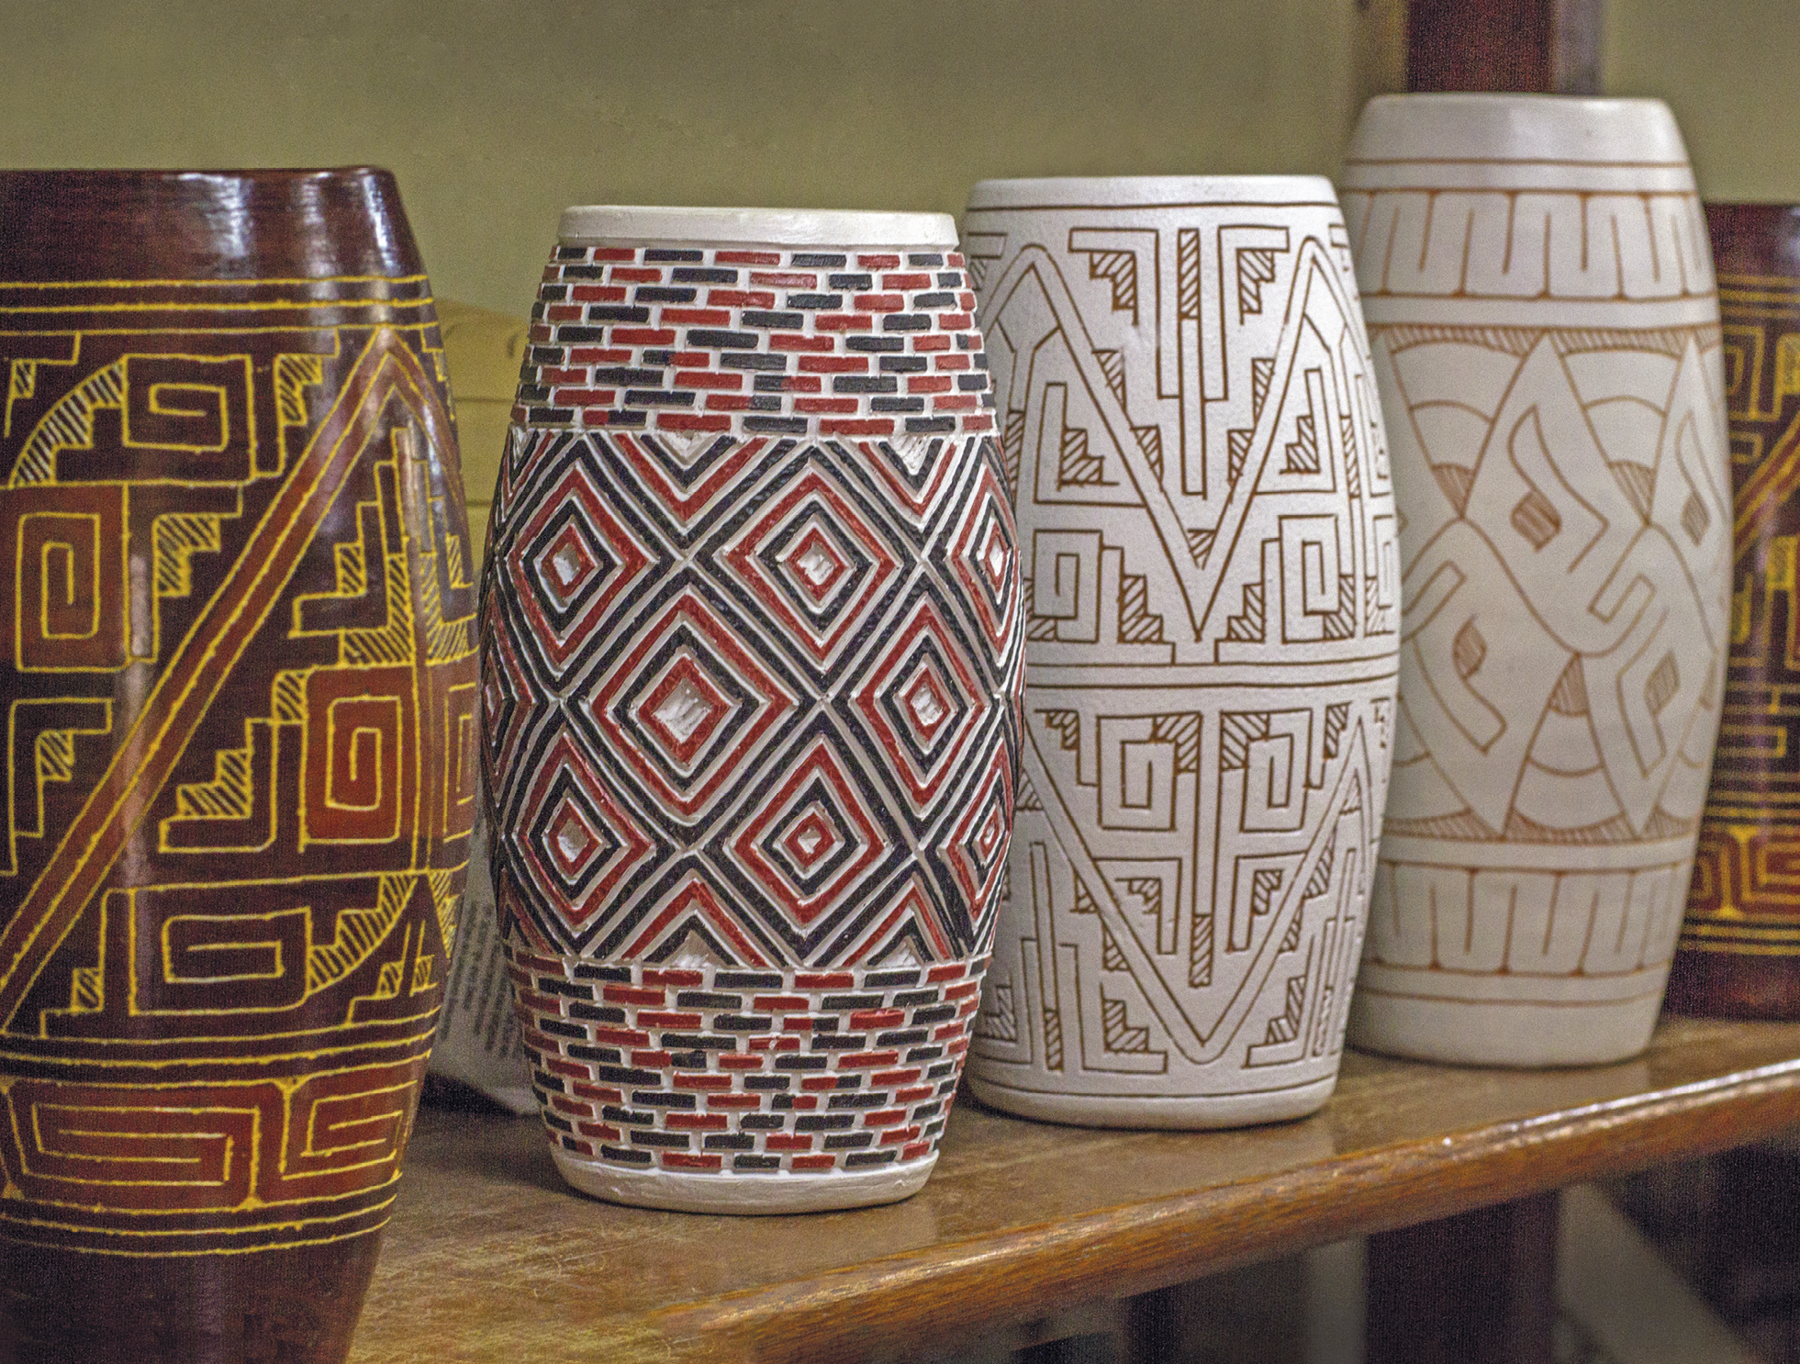 Fotografia. Vasos cilíndricos de cerâmicas. Da esquerda para direita: vaso marrom com formas geométricas douradas e avermelhadas. Vaso branco com formas geométricas em formato de losangos e retângulos na cor vermelha e preta. Dois vasos de cor clara com padrões geométricos na cor marrom.